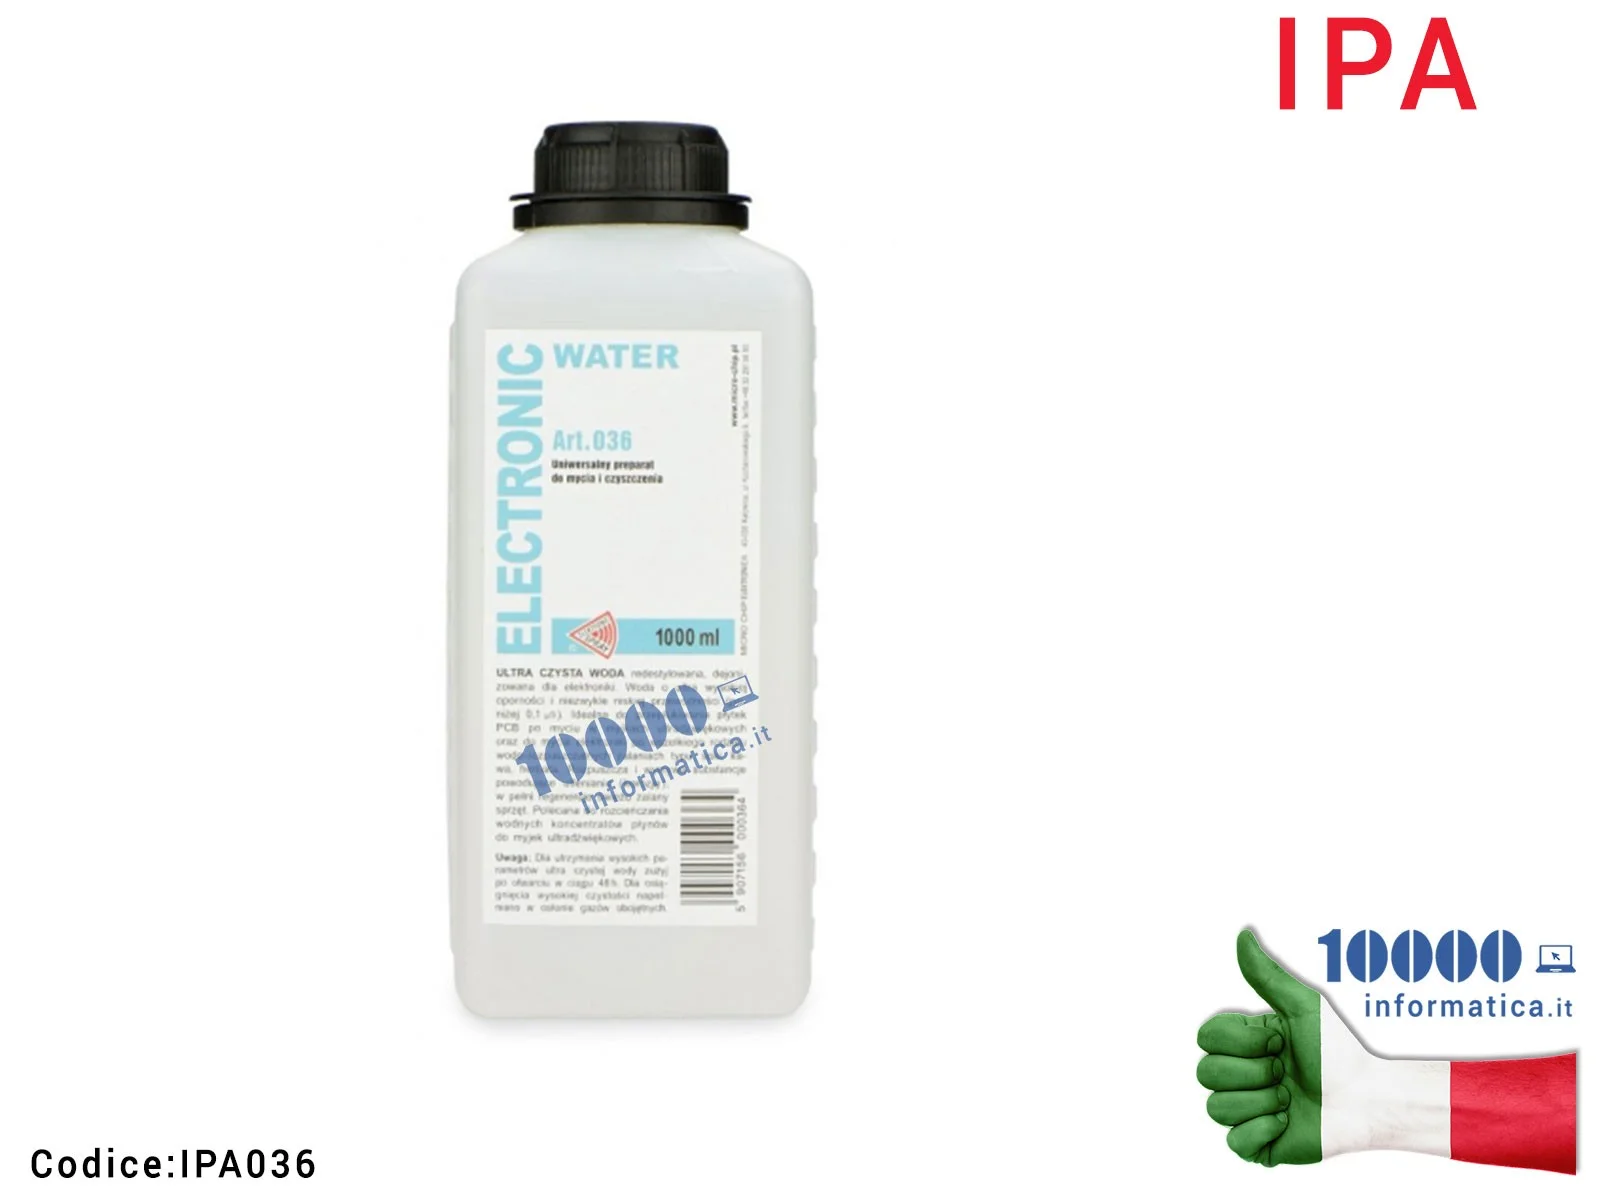 IPA036 Elettronic Water IPA Acqua Distillata Deionizzata ADR [1 LT] Art. 036 -0,1 uS Bassa Conducibilità